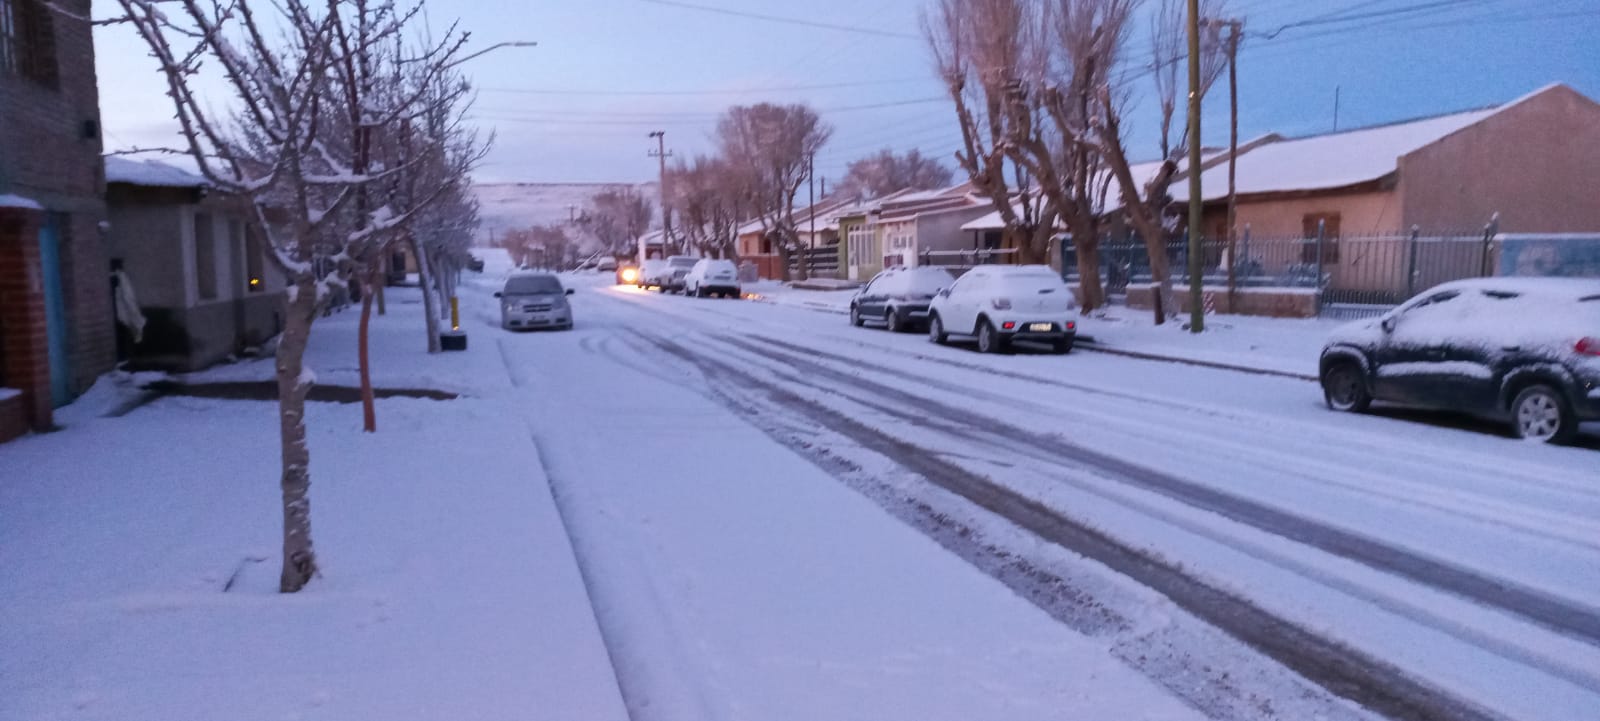 La vista en Jacobacci, calles cargadas de nieve y sin luz. Foto: José Mellado. 